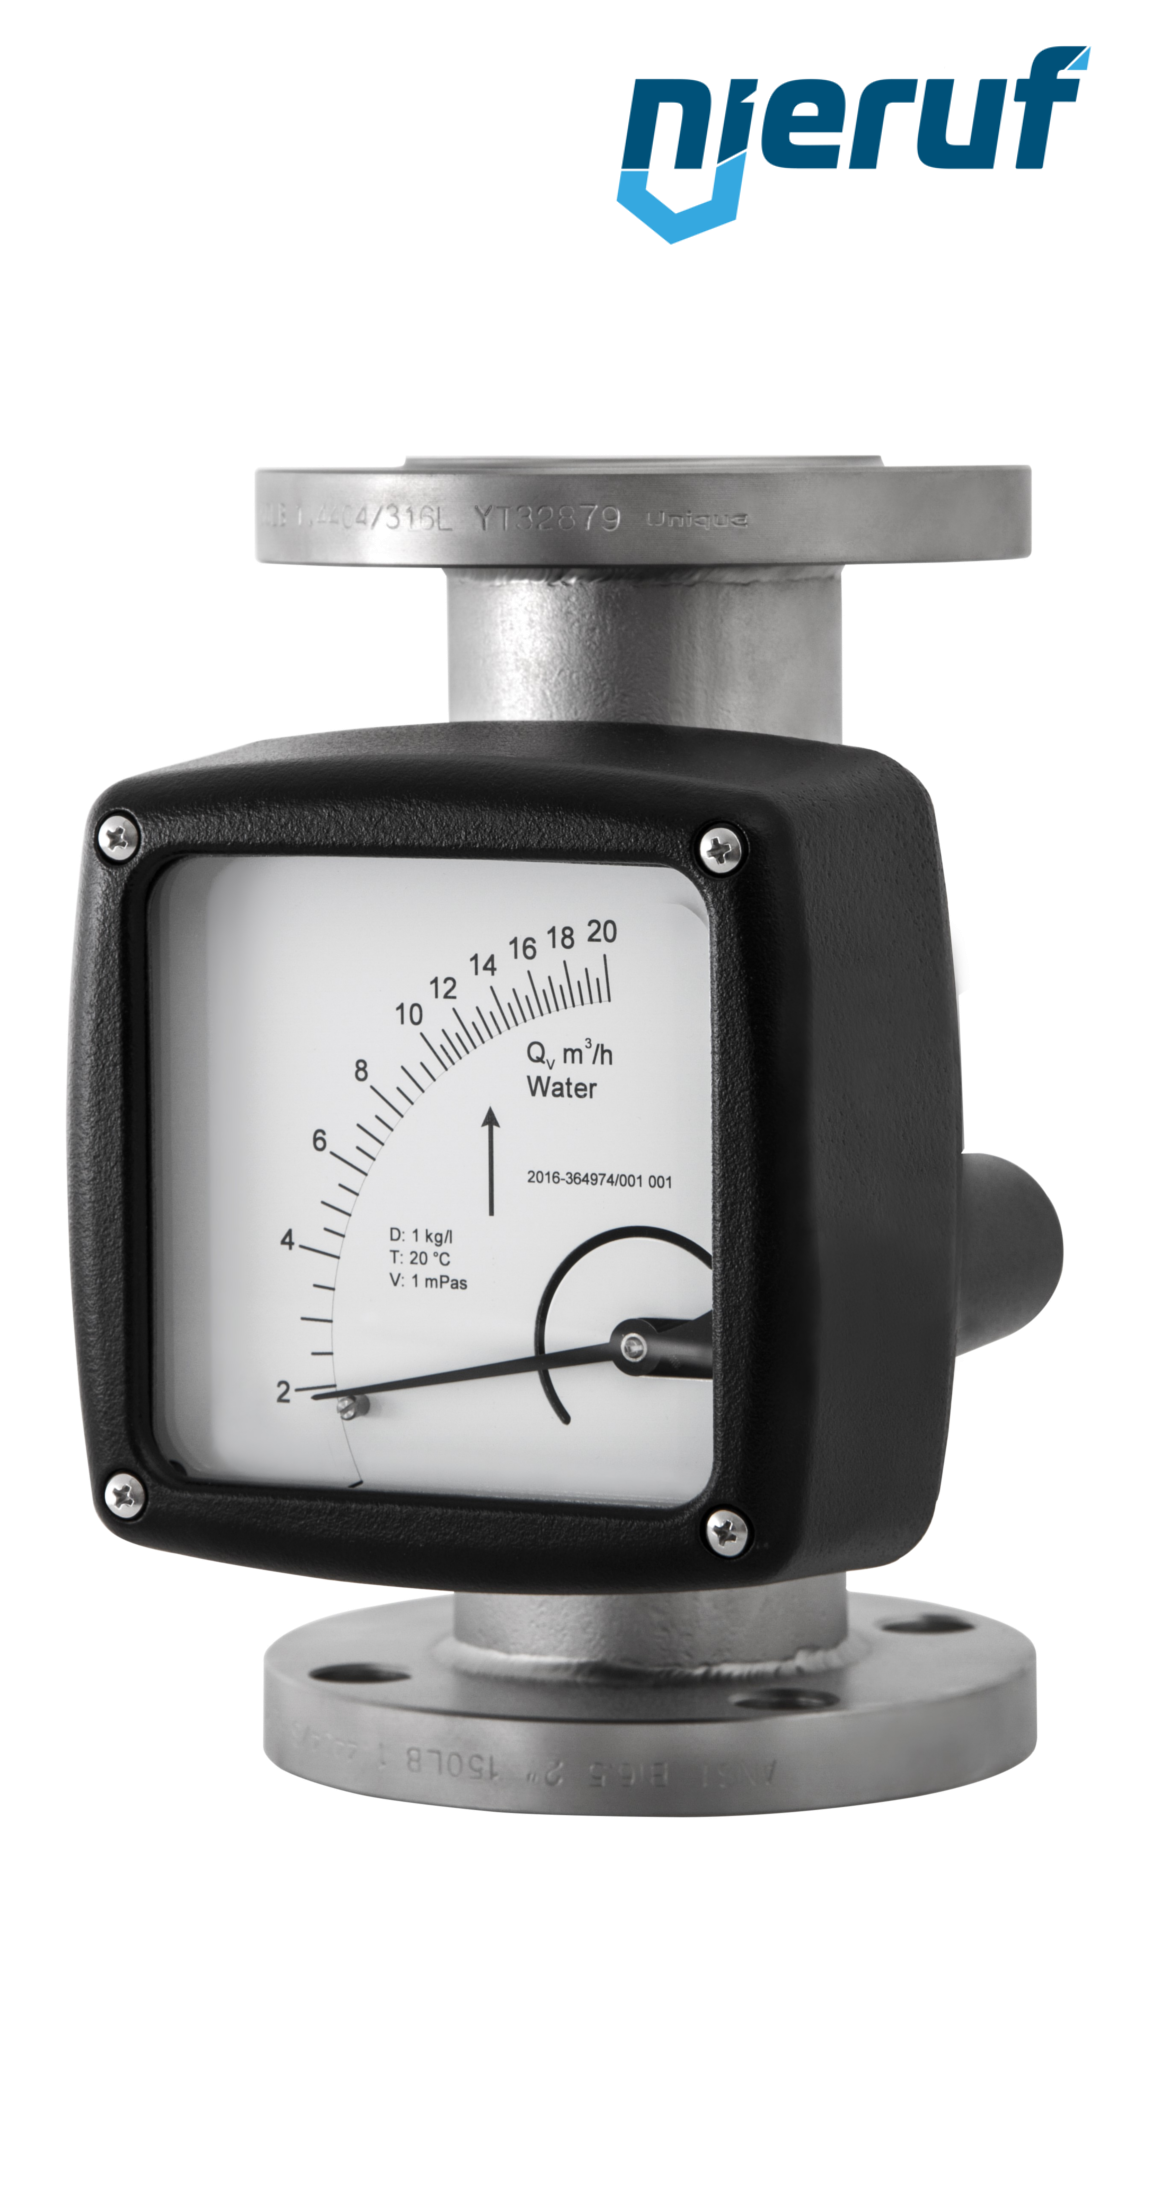 misuratore di flusso / rotametro completamente in metallo DN150-attacco 300,0 - 3000,0 m3/h tubo DN100 aria